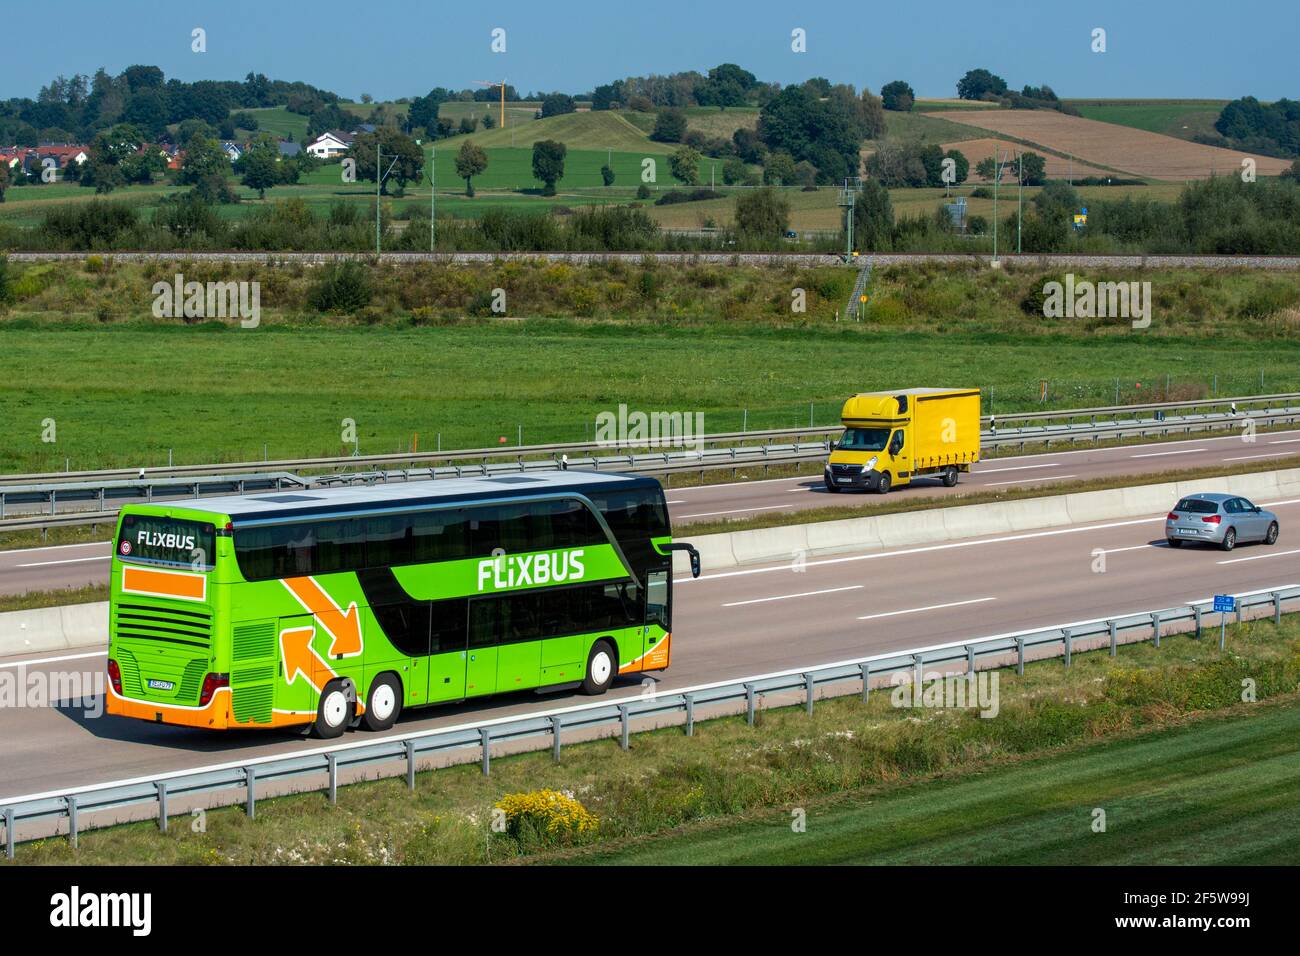 Bus, bus longue distance de la société FlixBus conduit sur l'autoroute A8  près de Jettingen, Bavière, Allemagne Photo Stock - Alamy